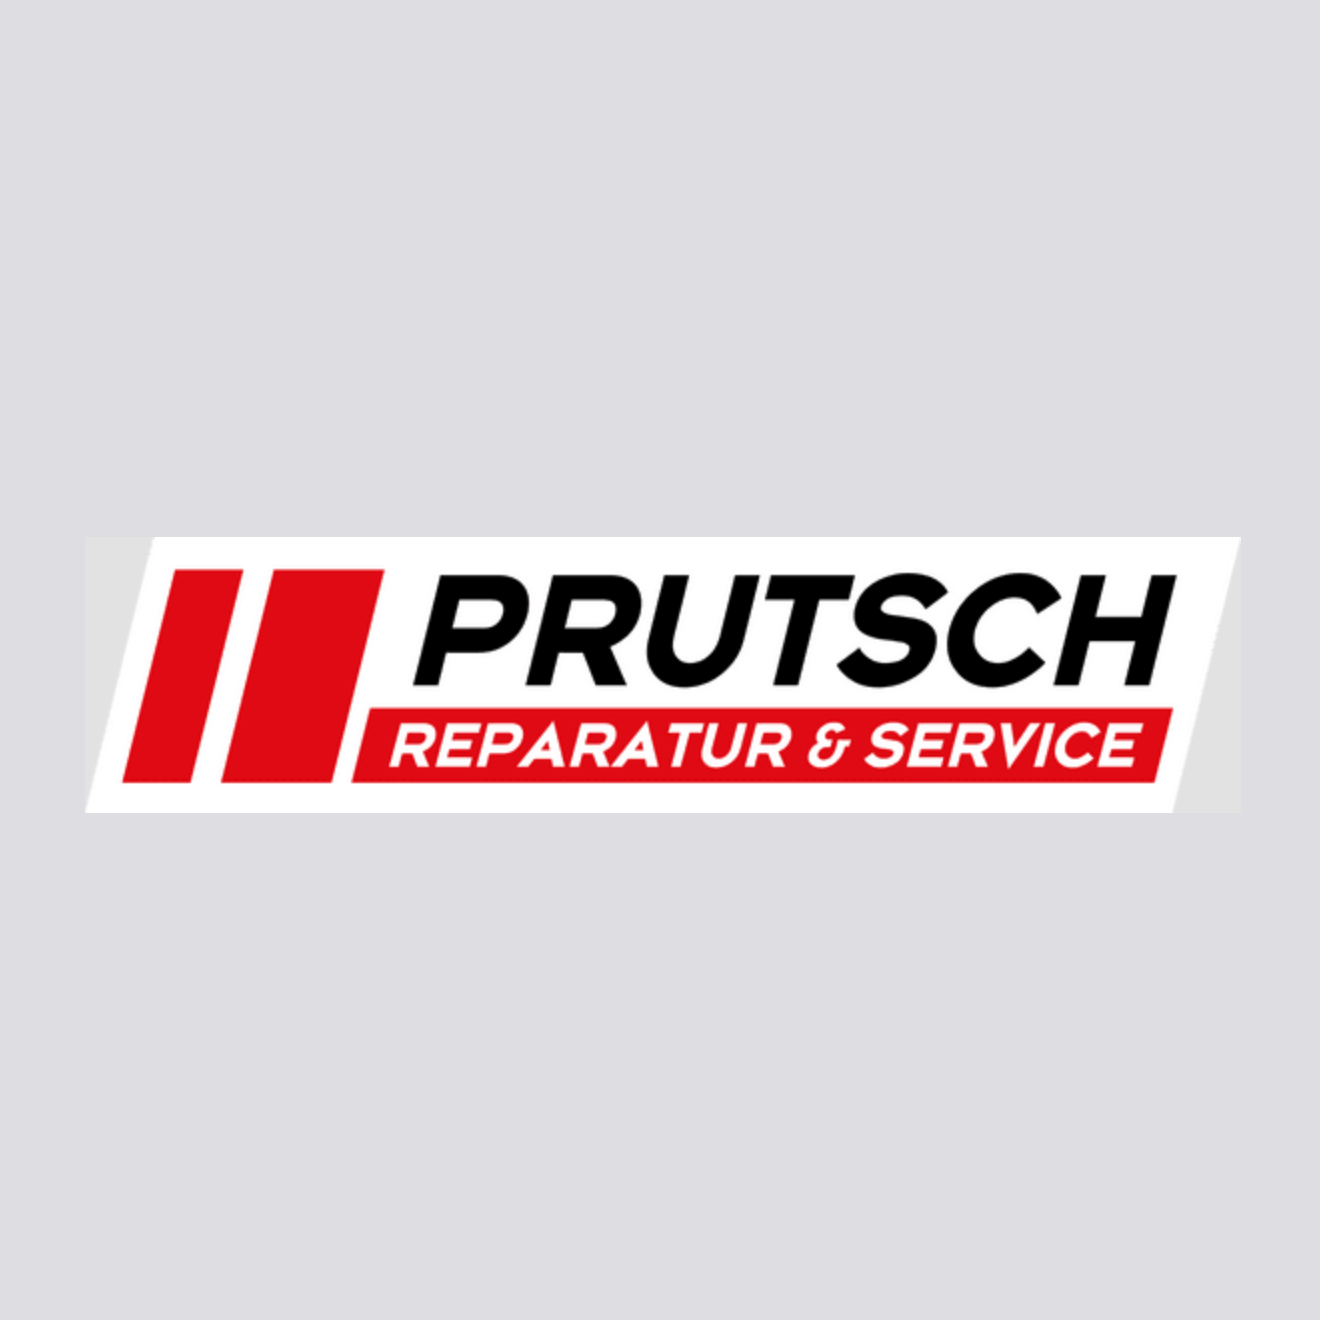 Prutsch Reparatur u. Service e.U. | St. Stefan im Rosental logo